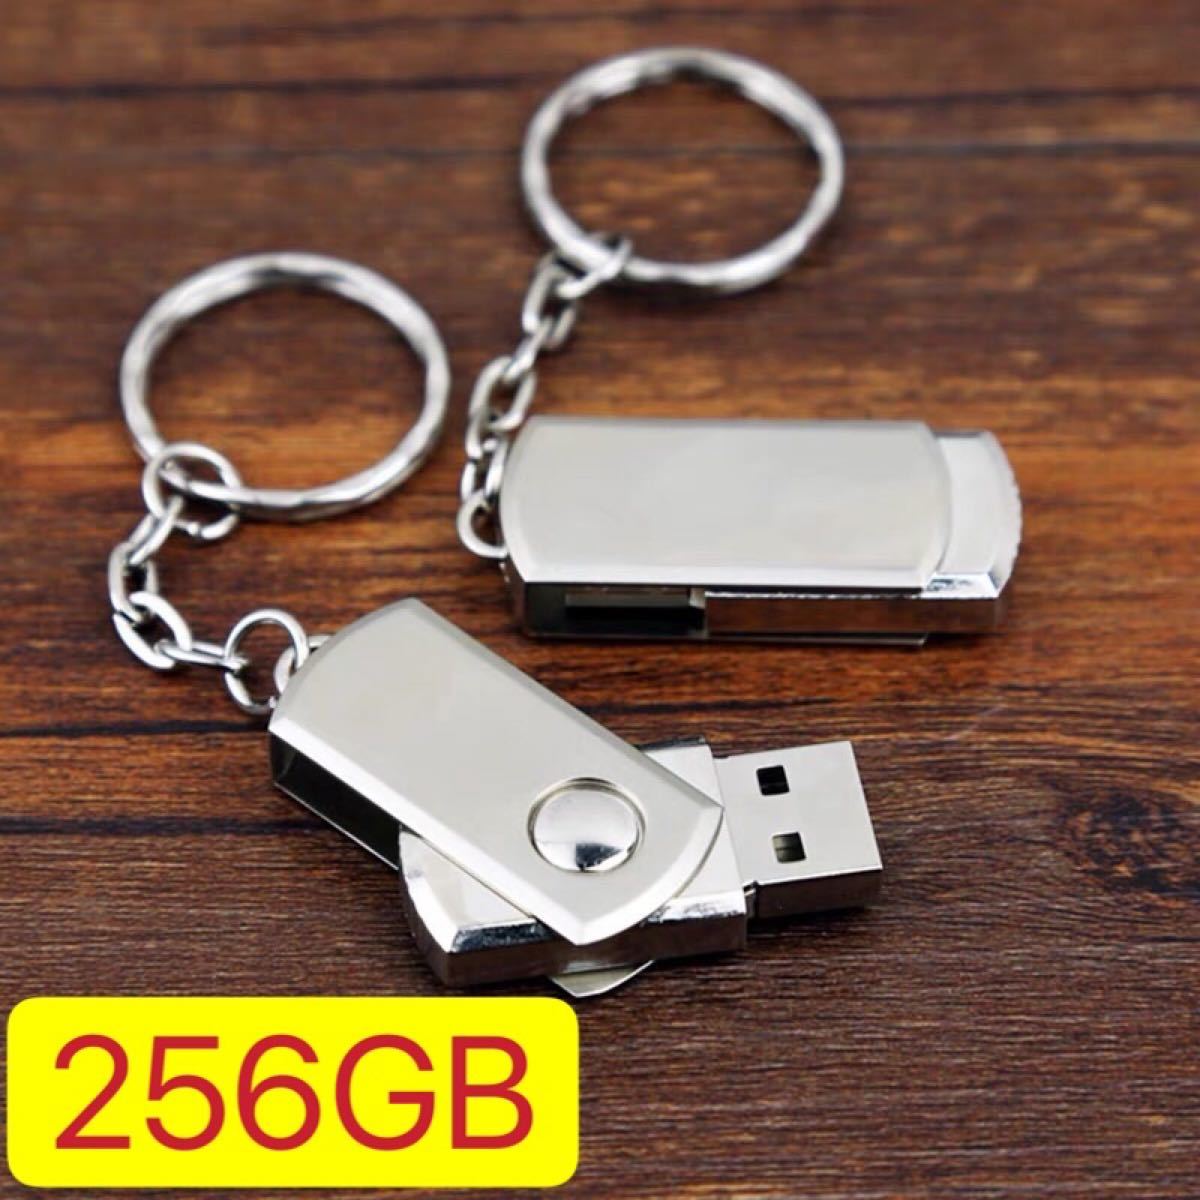 USBメモリー256GB  1個のお値段